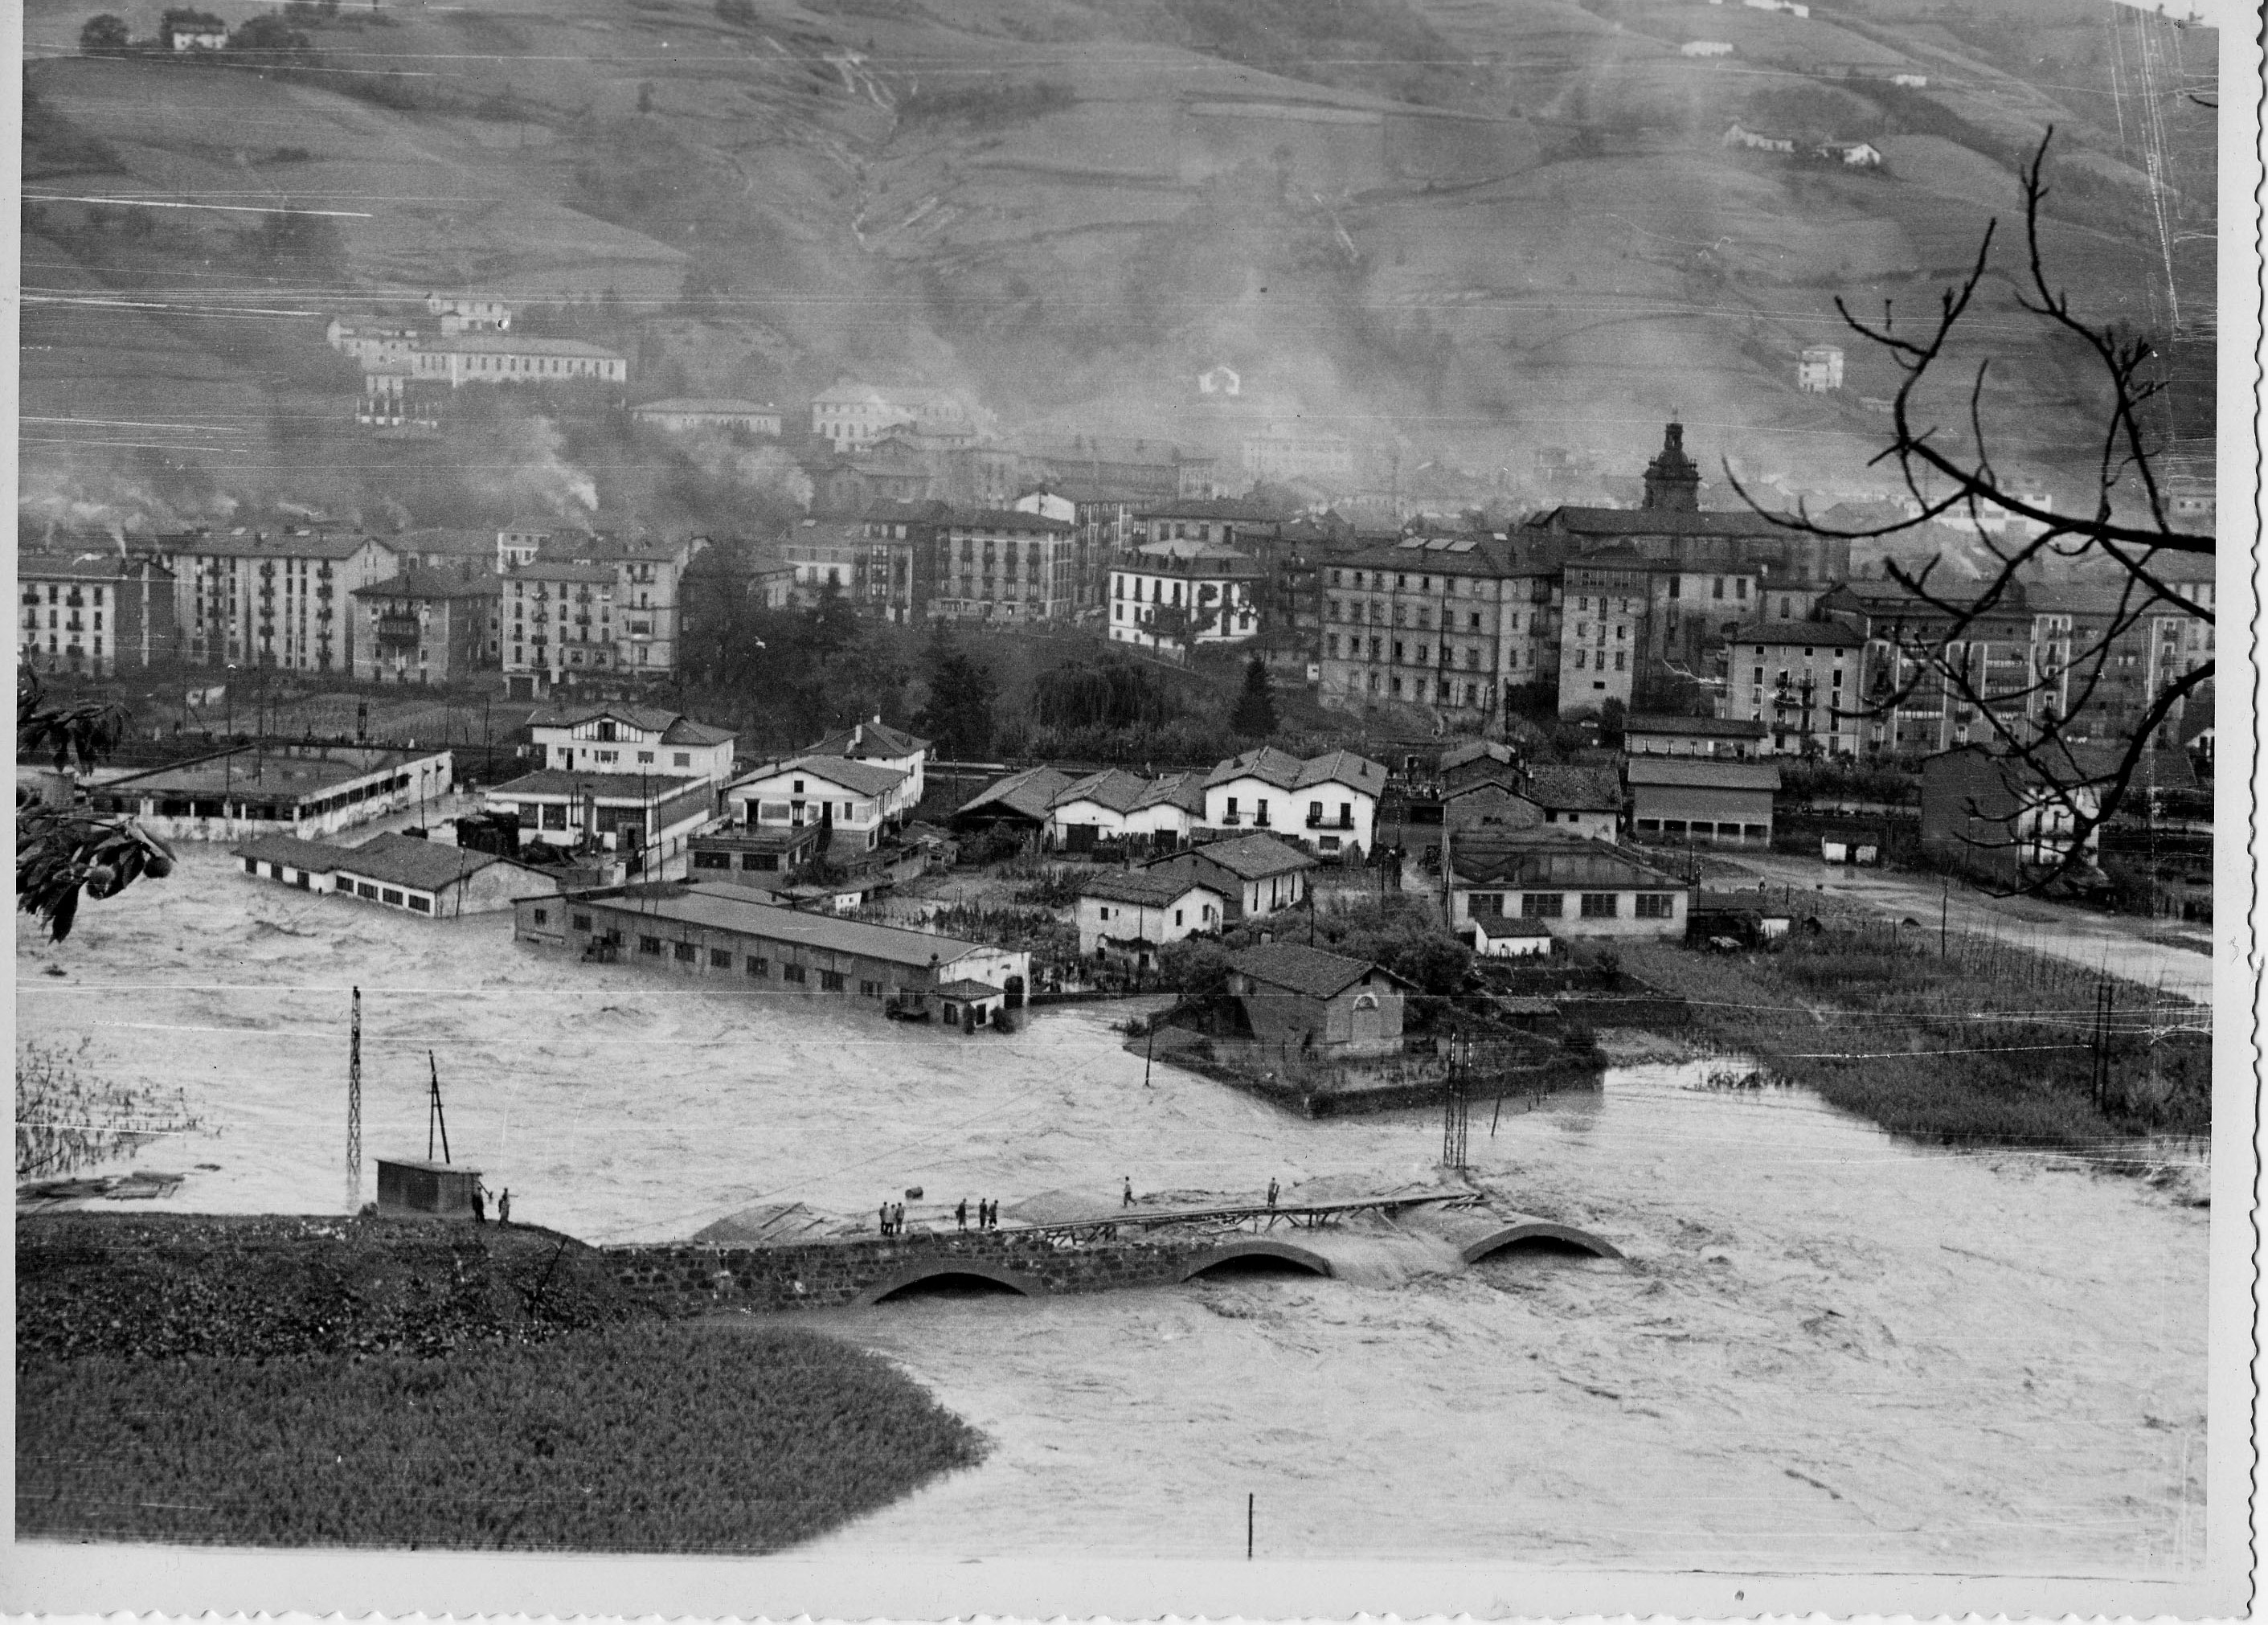 LAS FOTOS DE LA SEMANA: Inundaciones de 1953